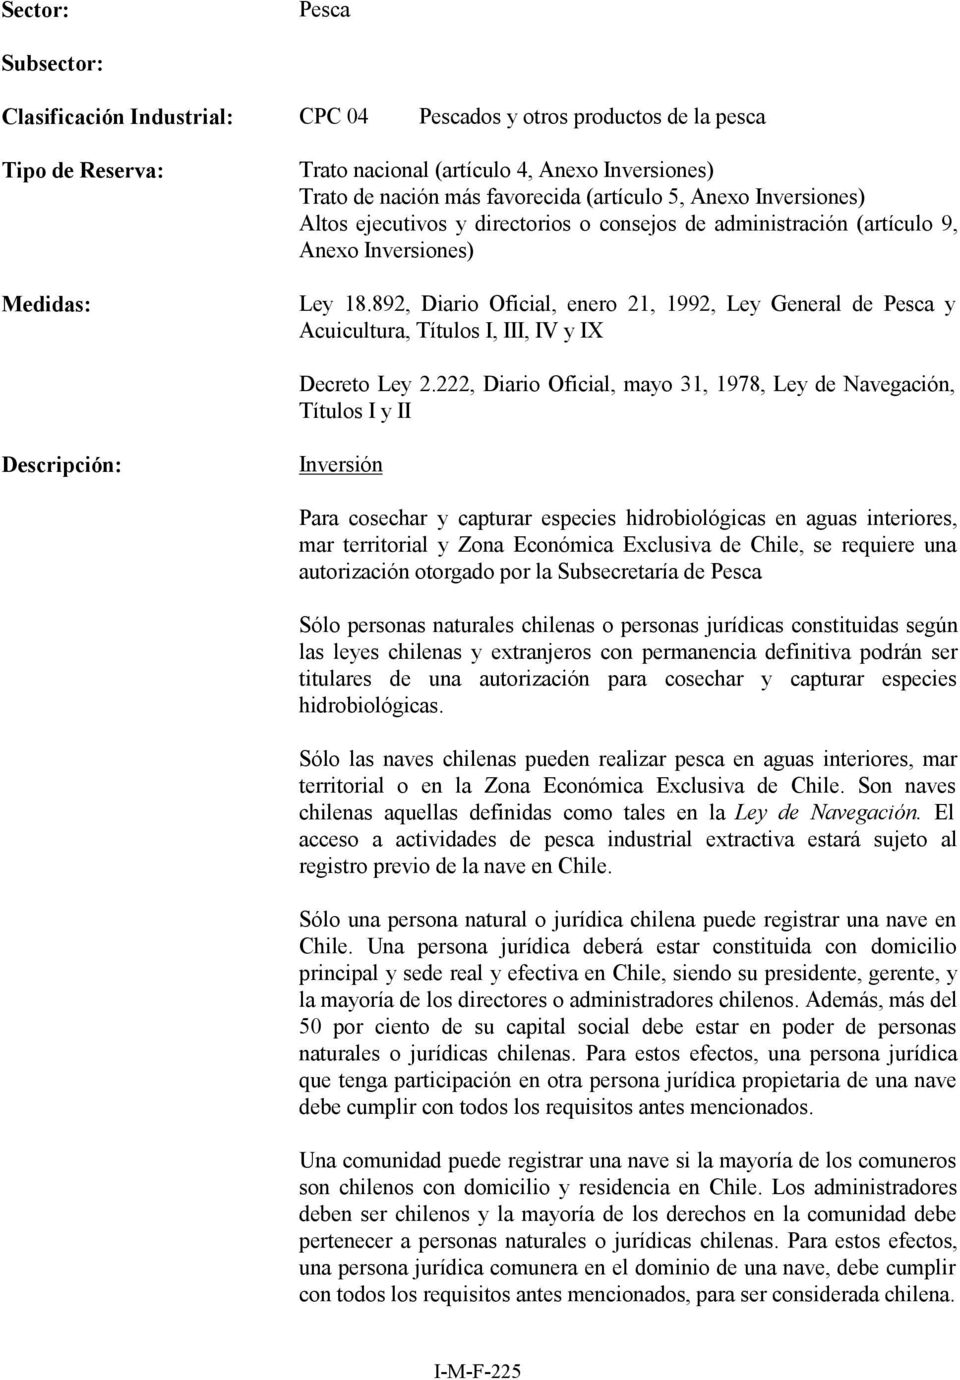 892, Diario Oficial, enero 21, 1992, Ley General de Pesca y Acuicultura, Títulos I, III, IV y IX Decreto Ley 2.